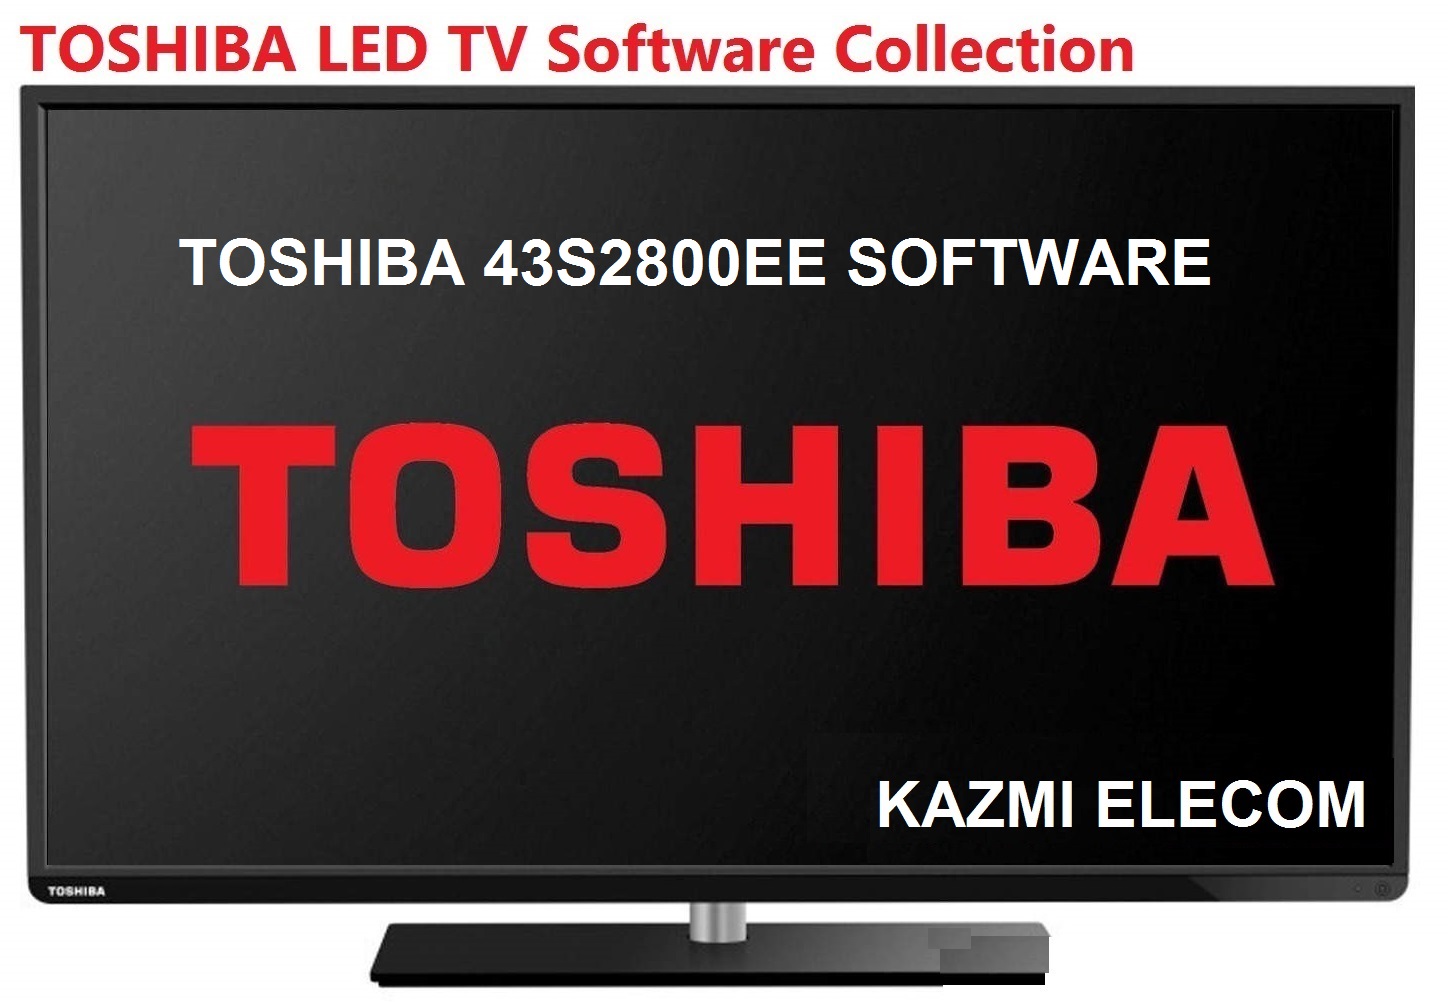 Toshiba 43S2800Ee